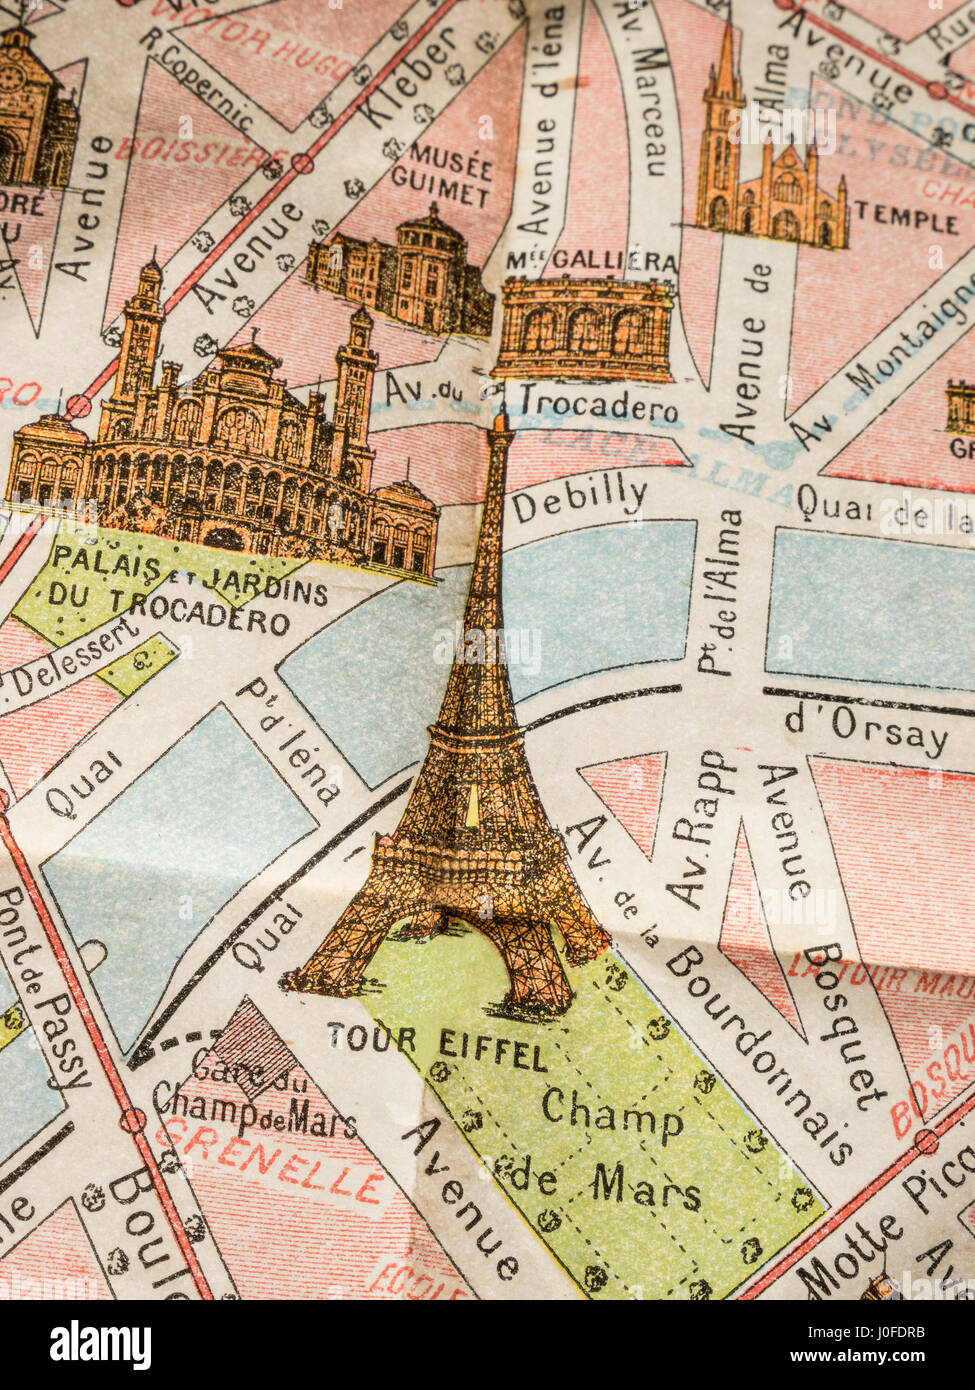 PARÍS VINTAGE RARO DETALLE DE MAPA fino detalle de impresión de raro 1900 retro color Mapa Monumental de París, con Torre Eiffel y Trocadero etc Foto de stock